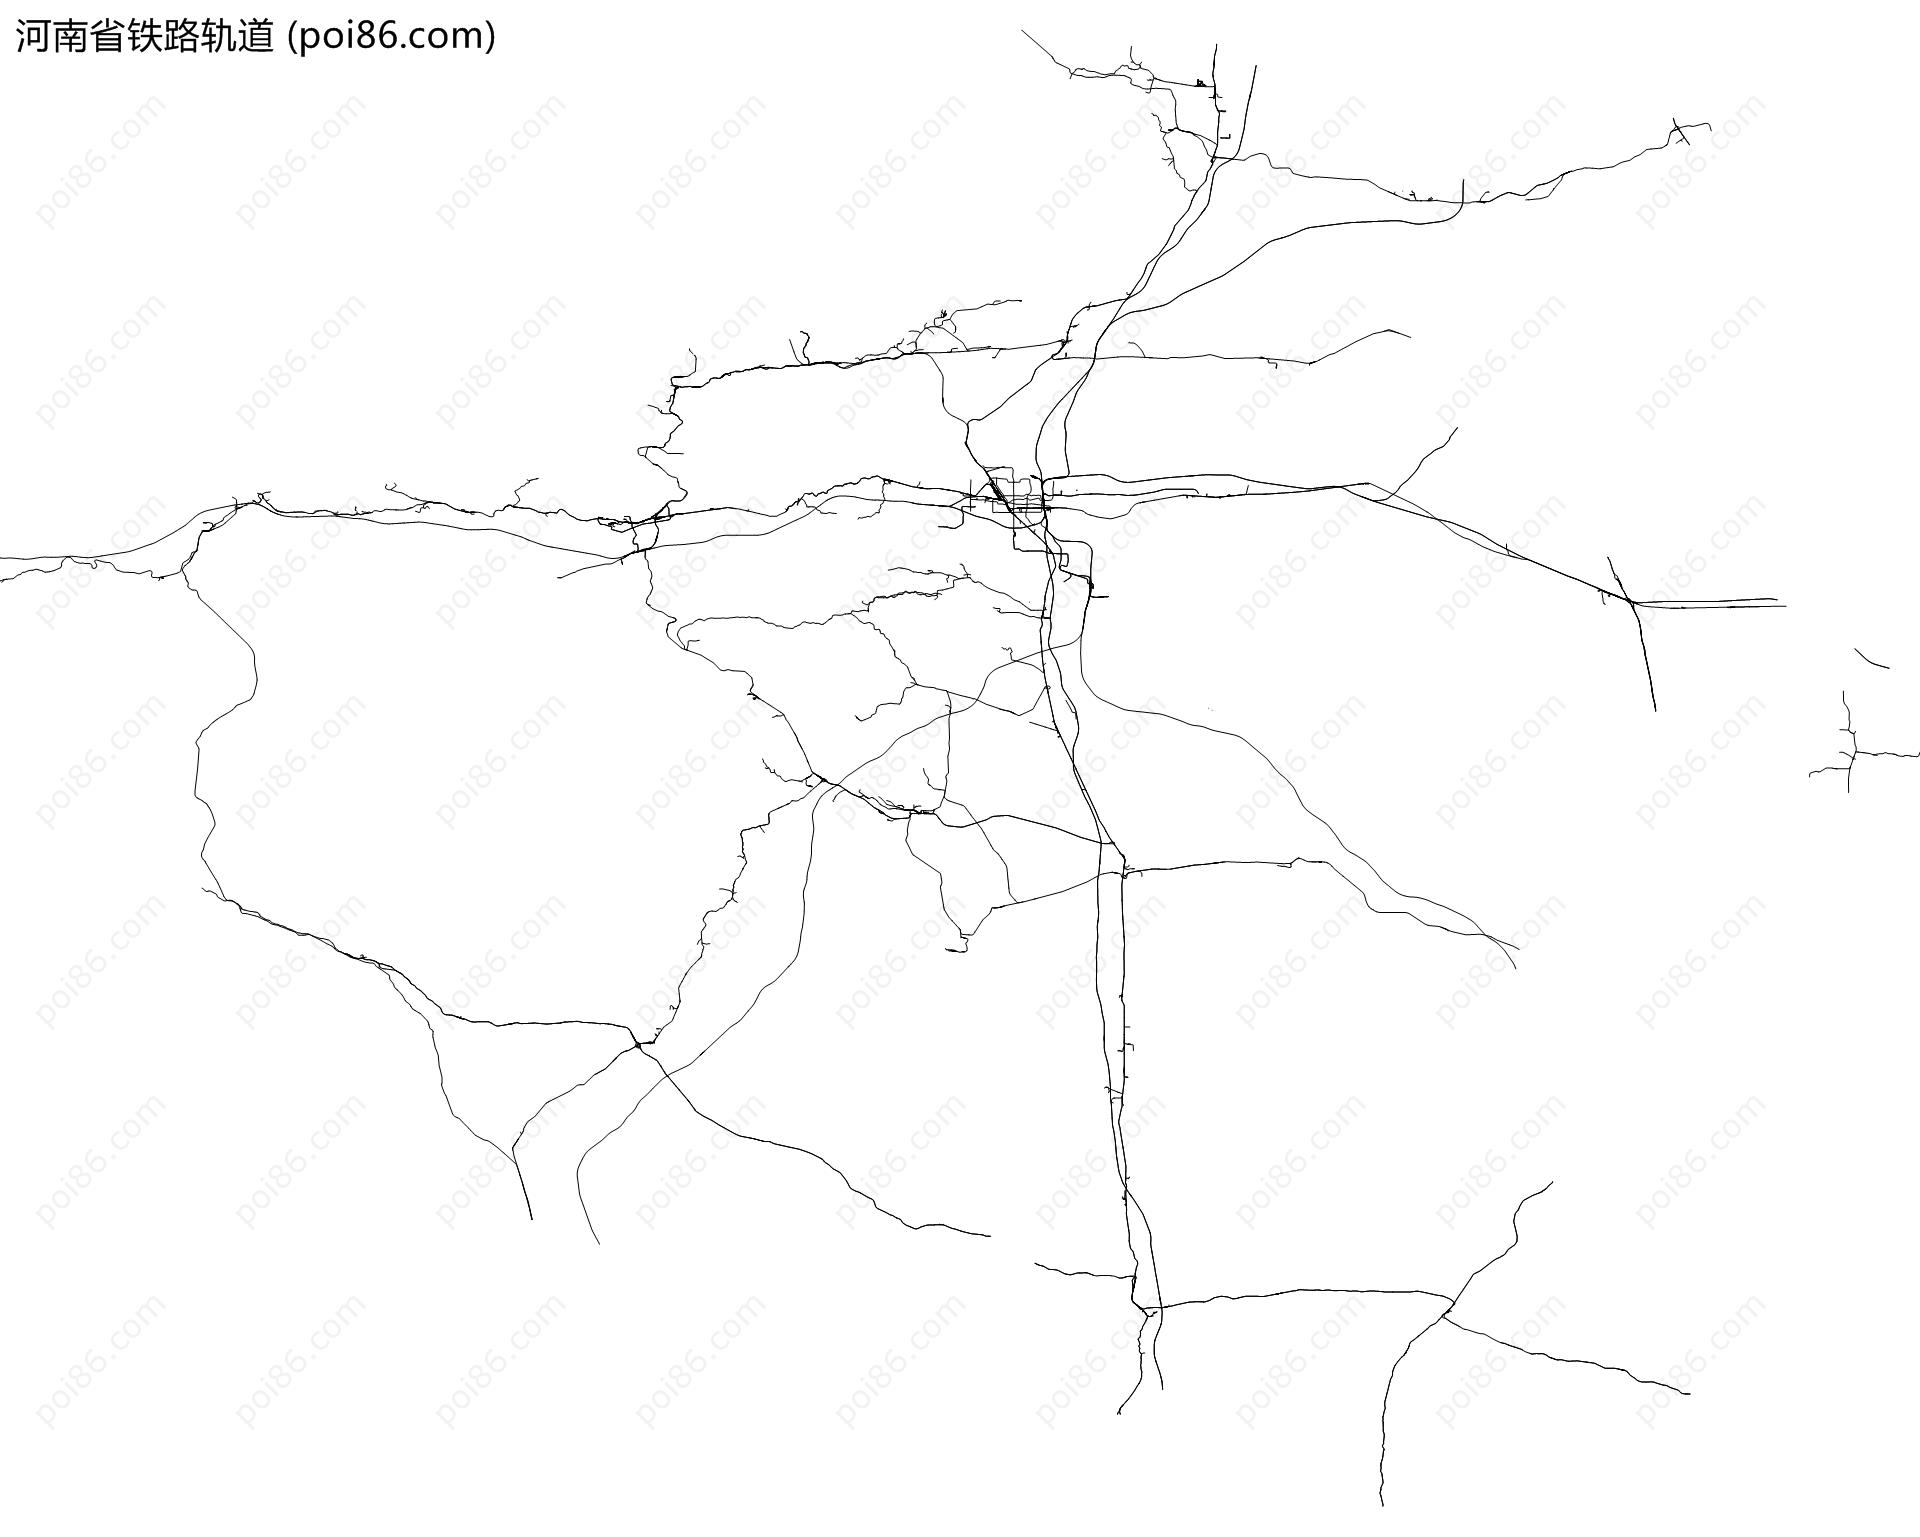 河南省铁路轨道地图